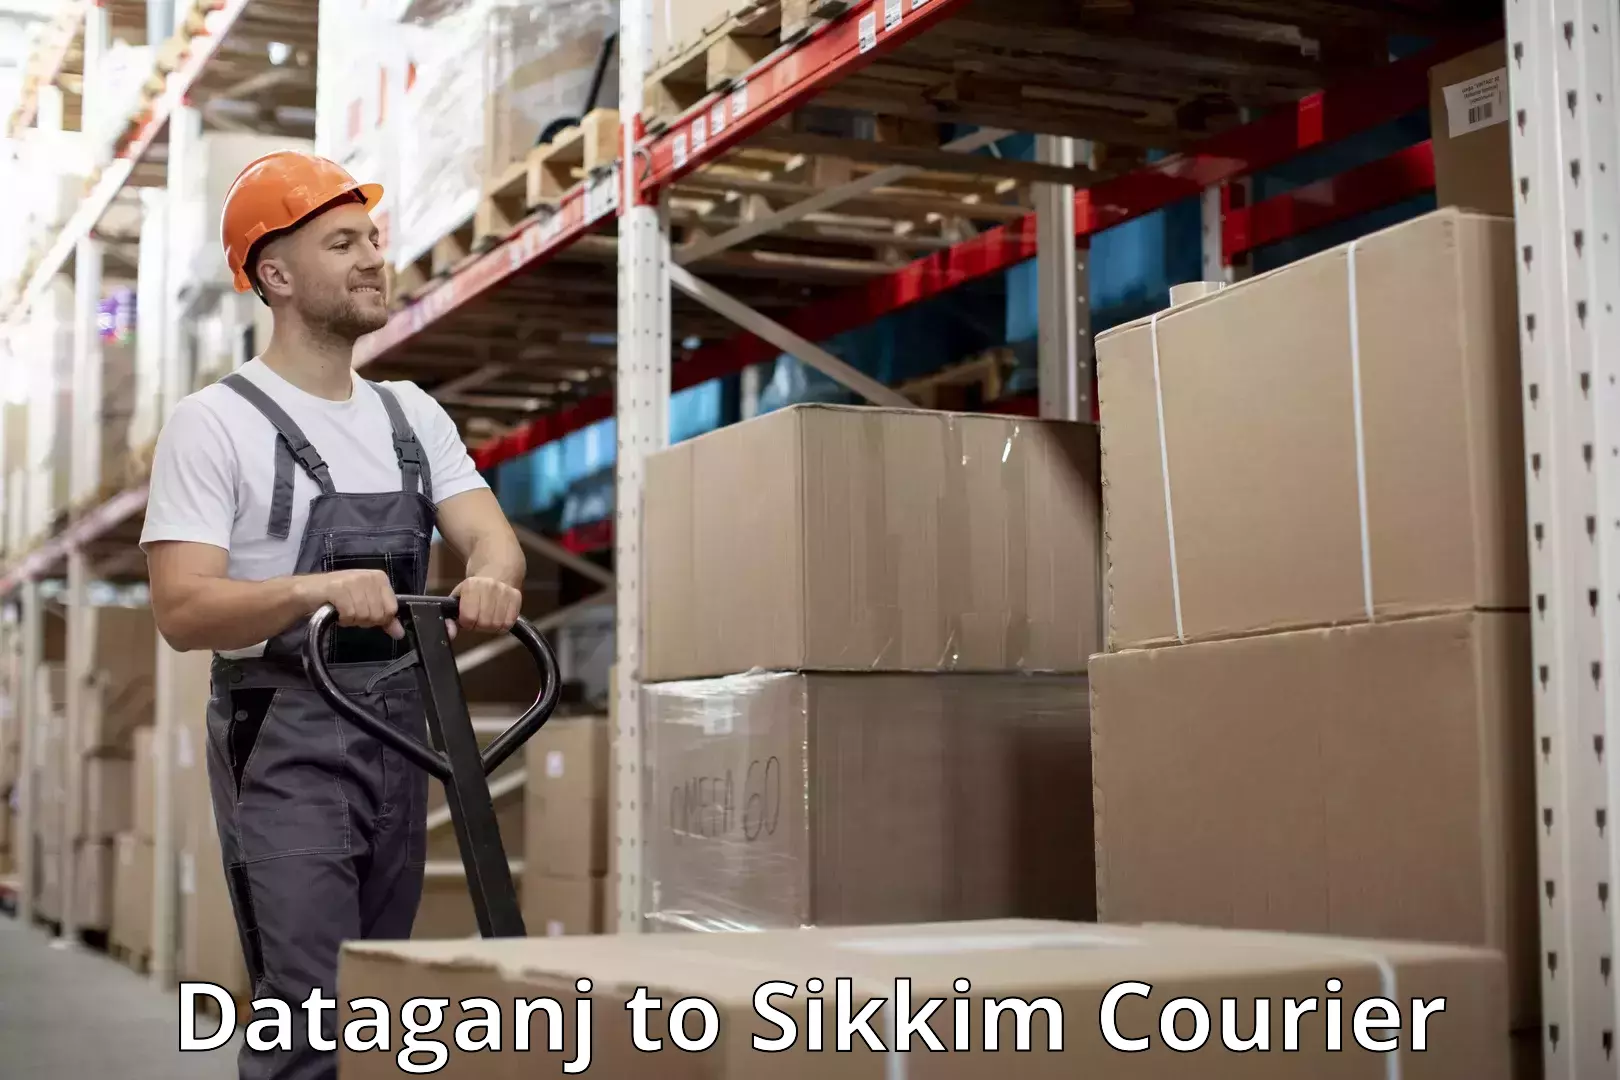 Luggage shipment tracking Dataganj to Sikkim